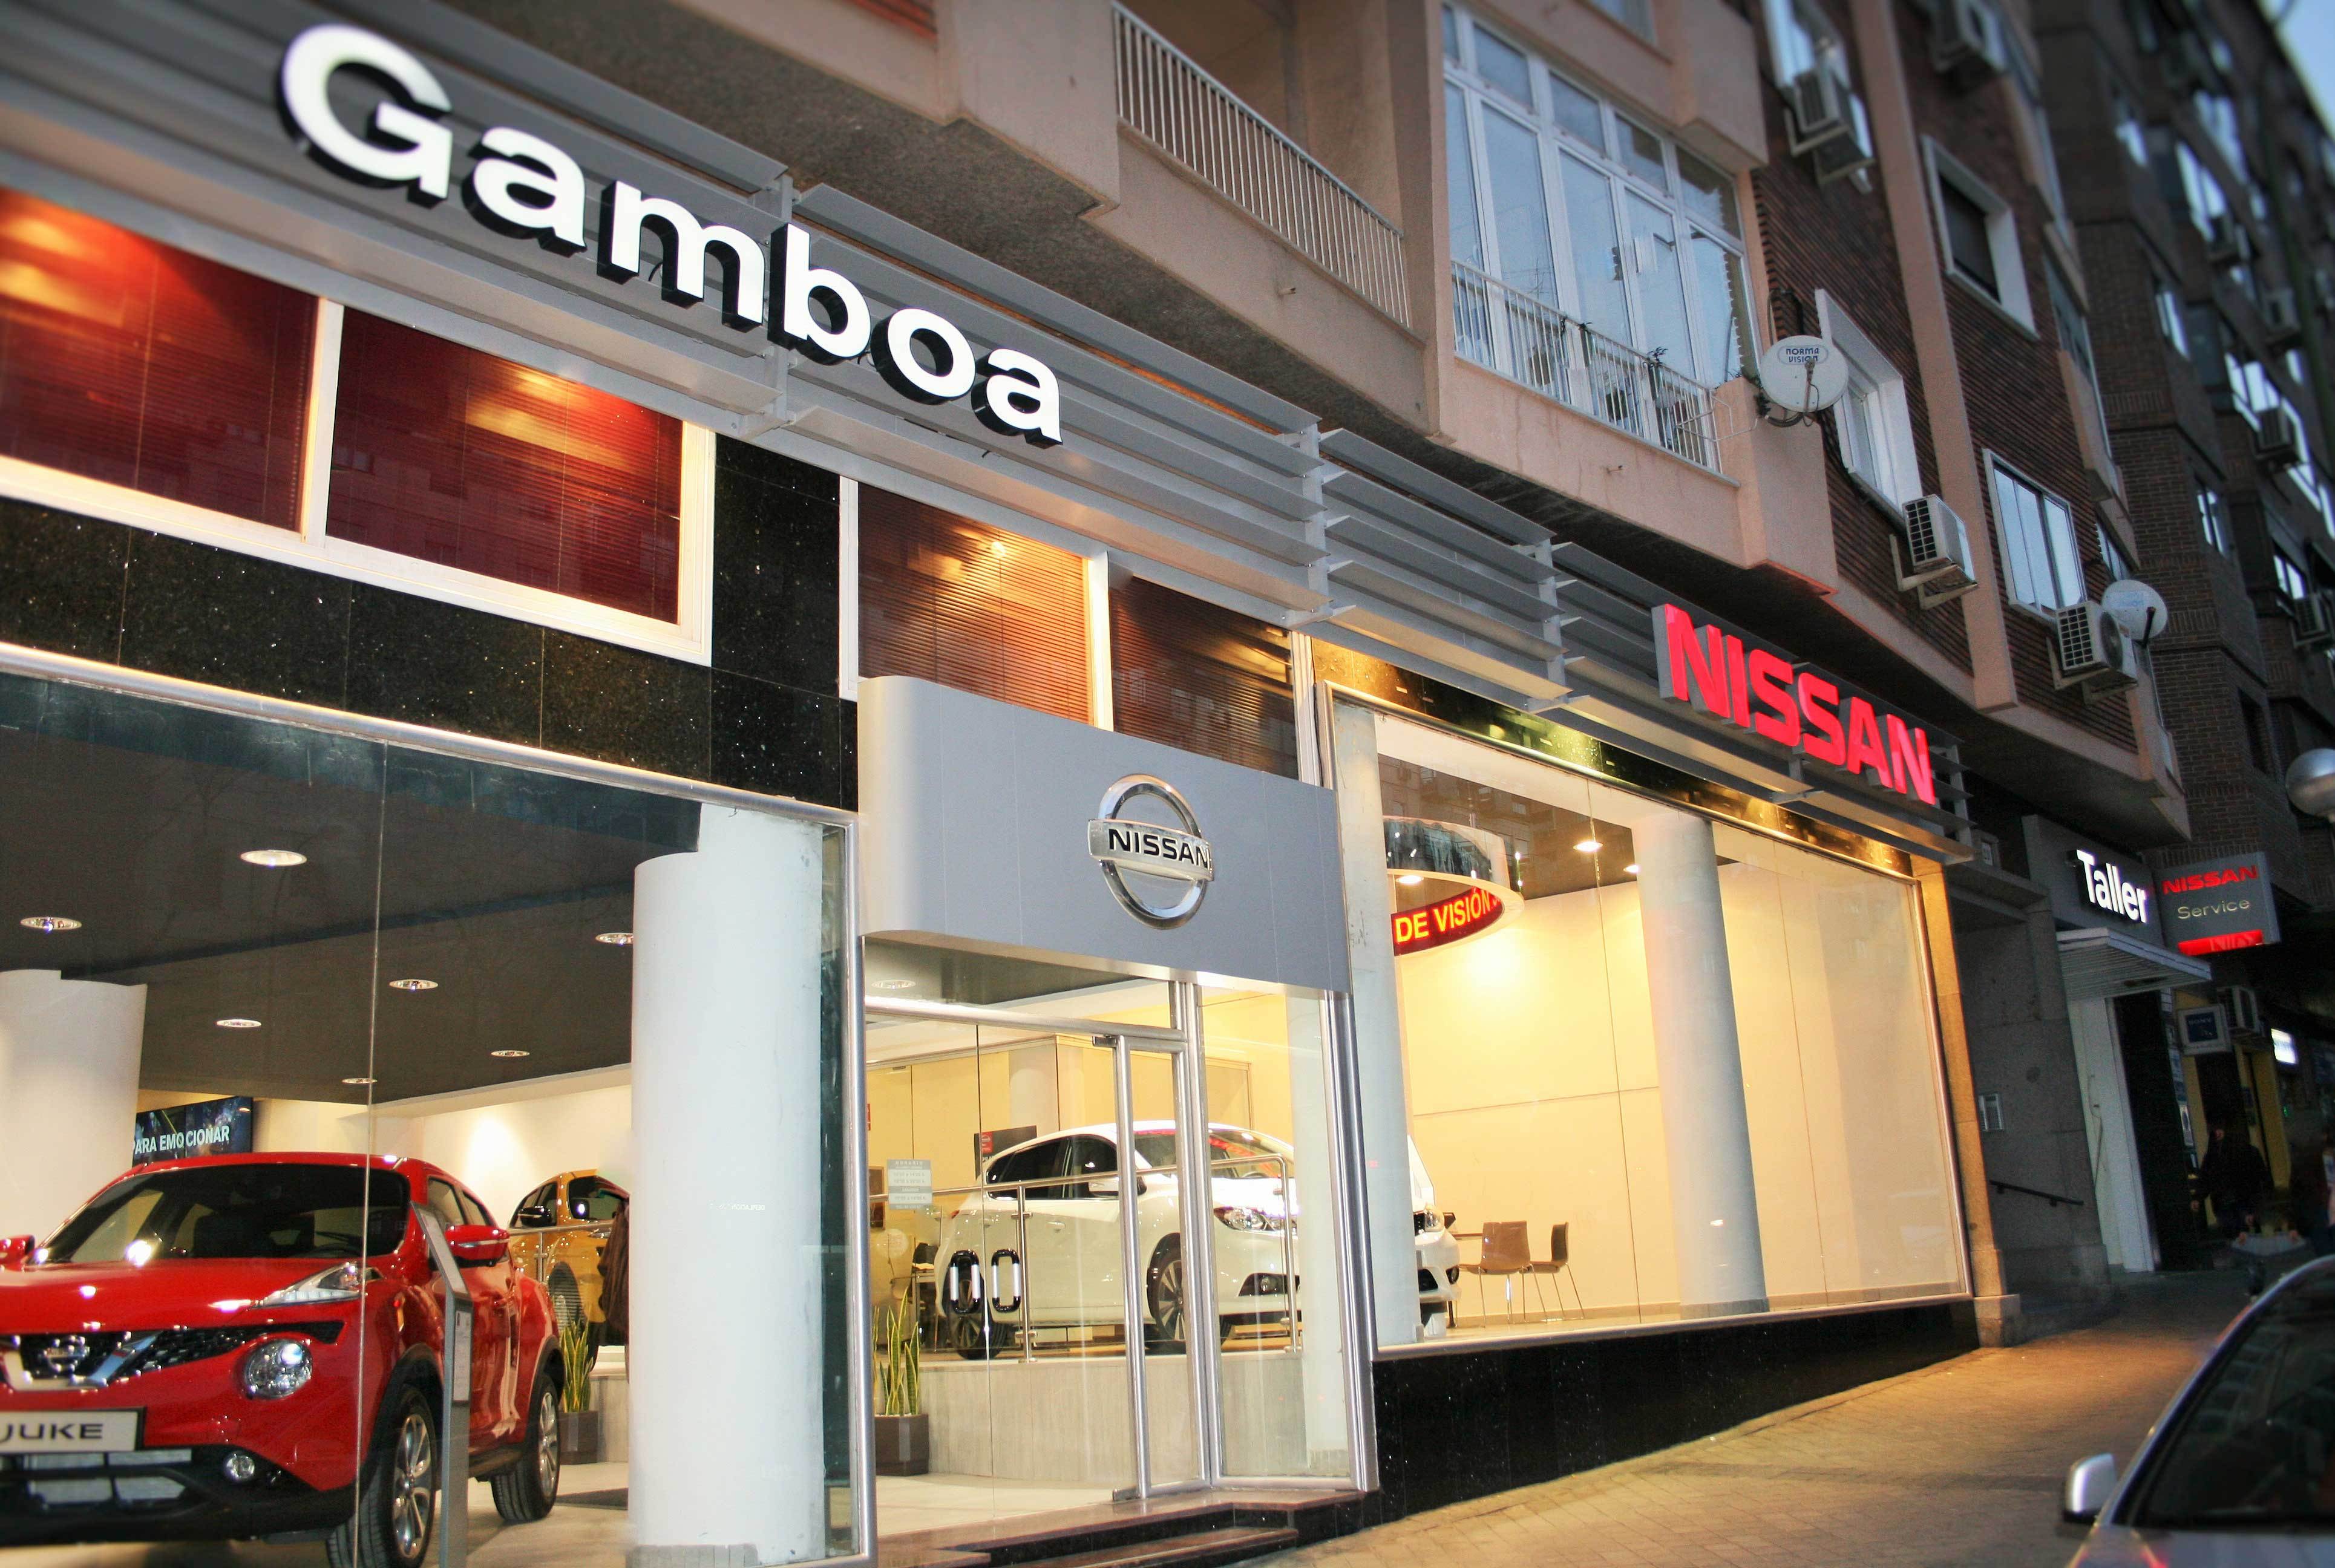  Grupo Gamboa: Concesionario Nissan en Esquerdo